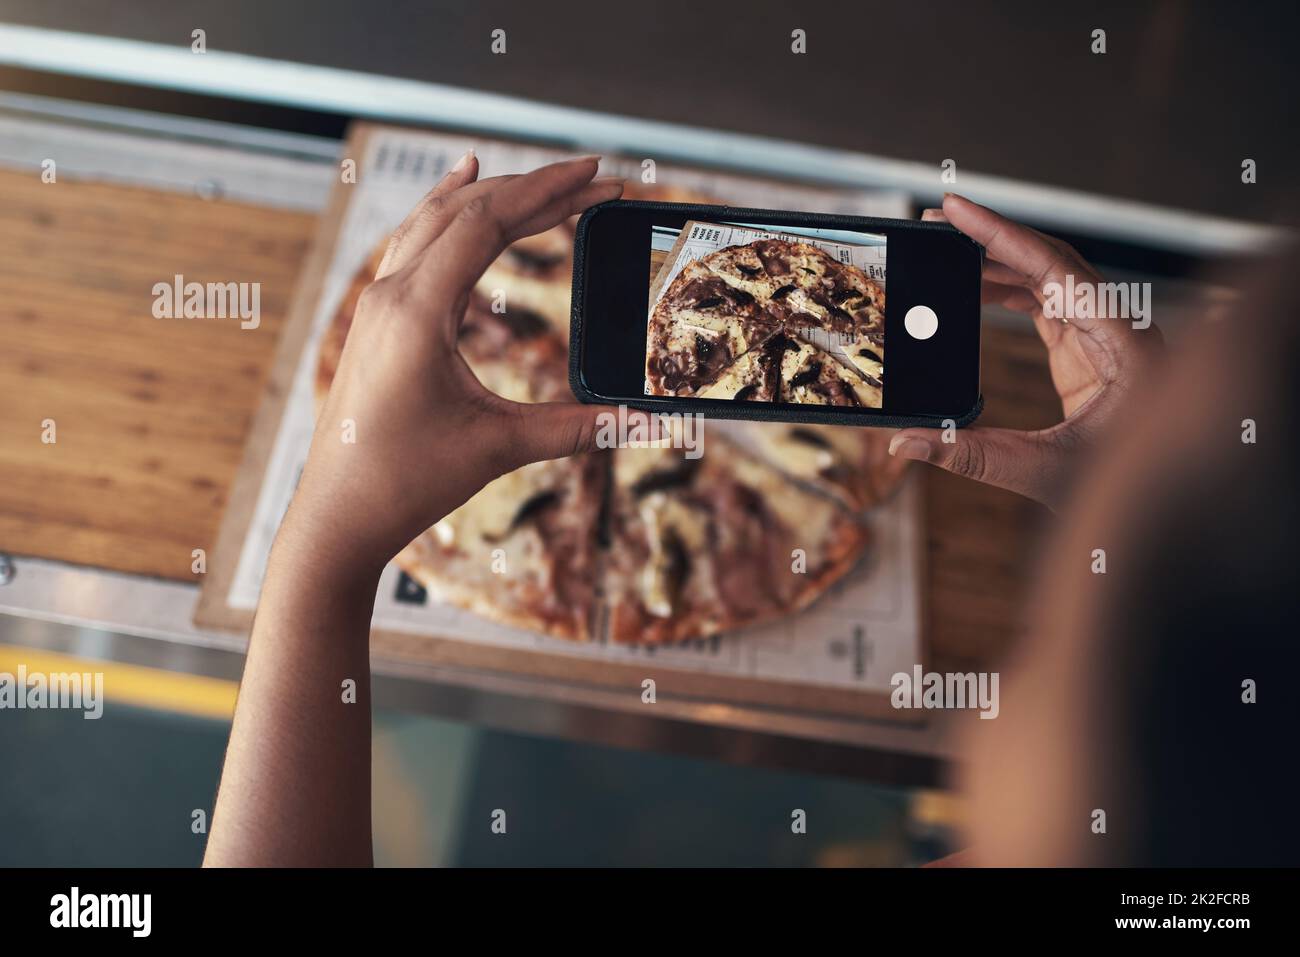 Je dois mettre ceci sur mon blog. Photo rognée d'une femme méconnue assise seule et utilisant son téléphone portable pour photographier sa pizza dans un restaurant. Banque D'Images